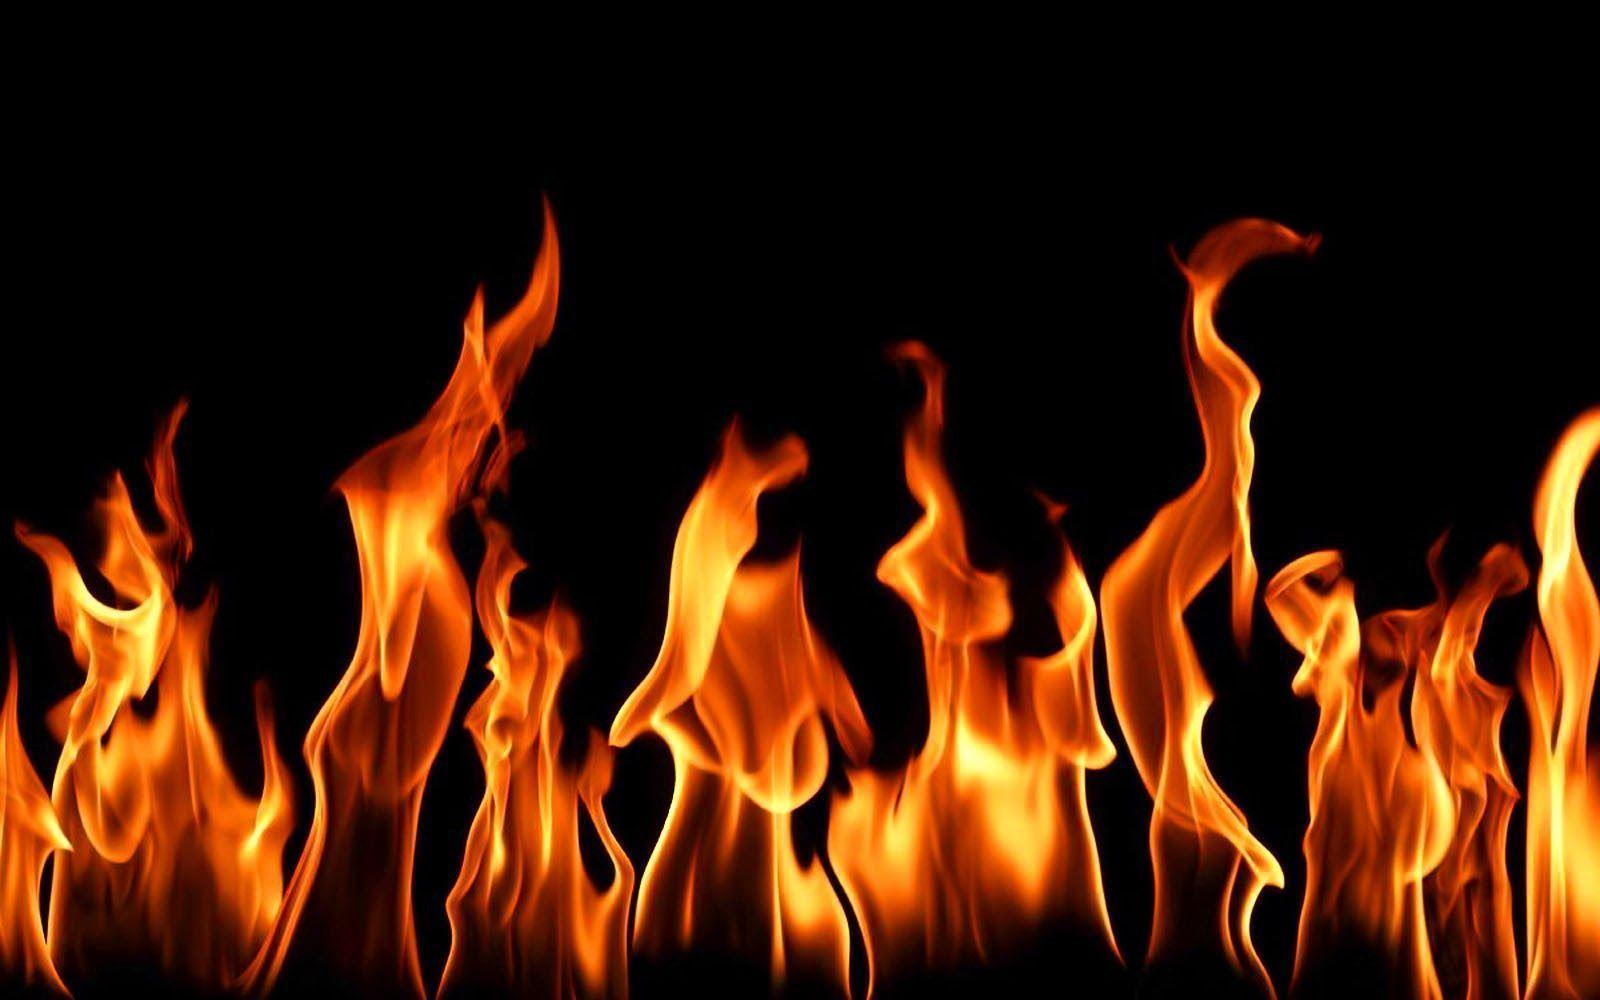 fire wallpaper hd,fire,flame,heat,event,gas (#127536) - WallpaperUse-daiichi.edu.vn